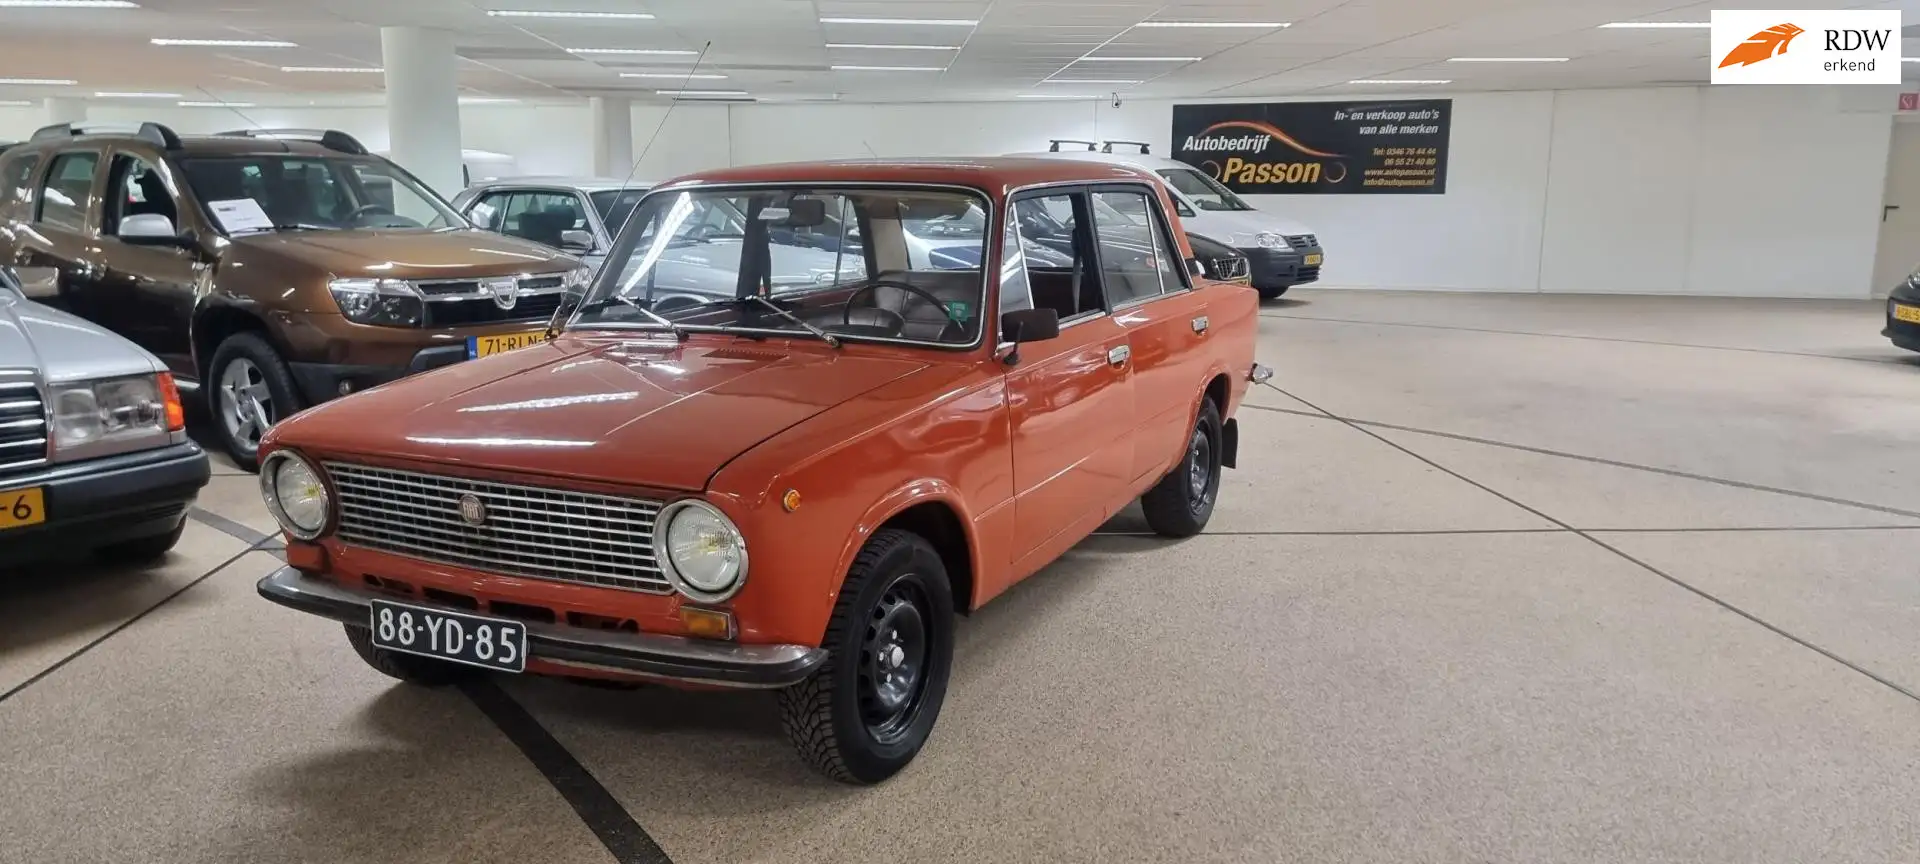 Lada 1300 Oldtimer Orange - 1